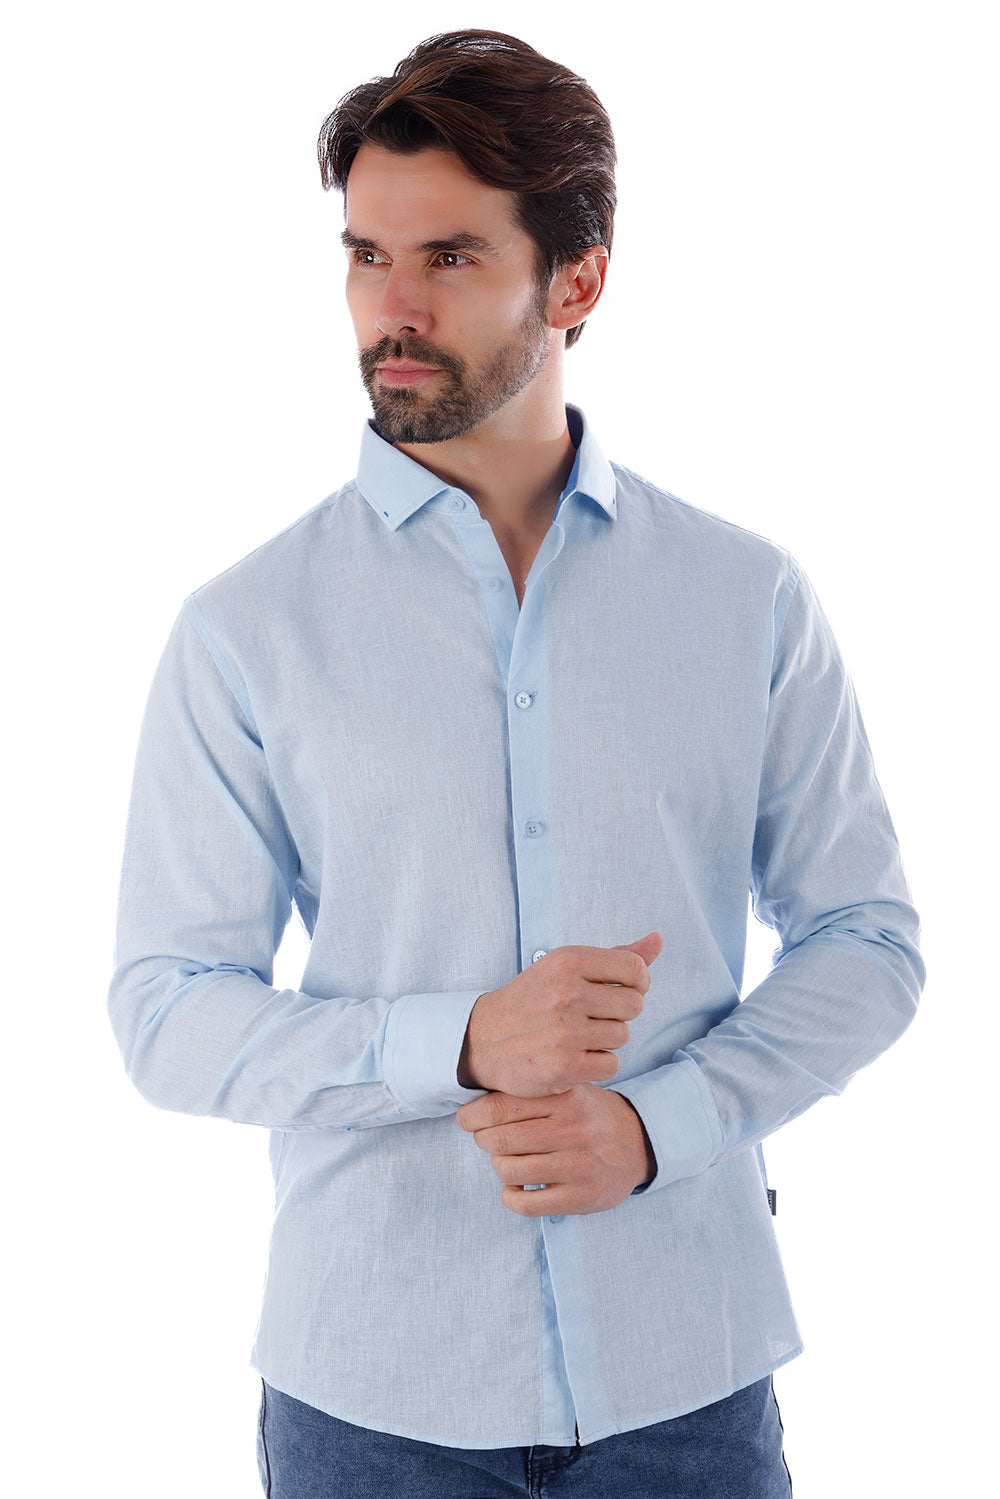 BARABAS Men's Linen Lightweight Button Down Long Sleeve Shirt 4B37 Blue